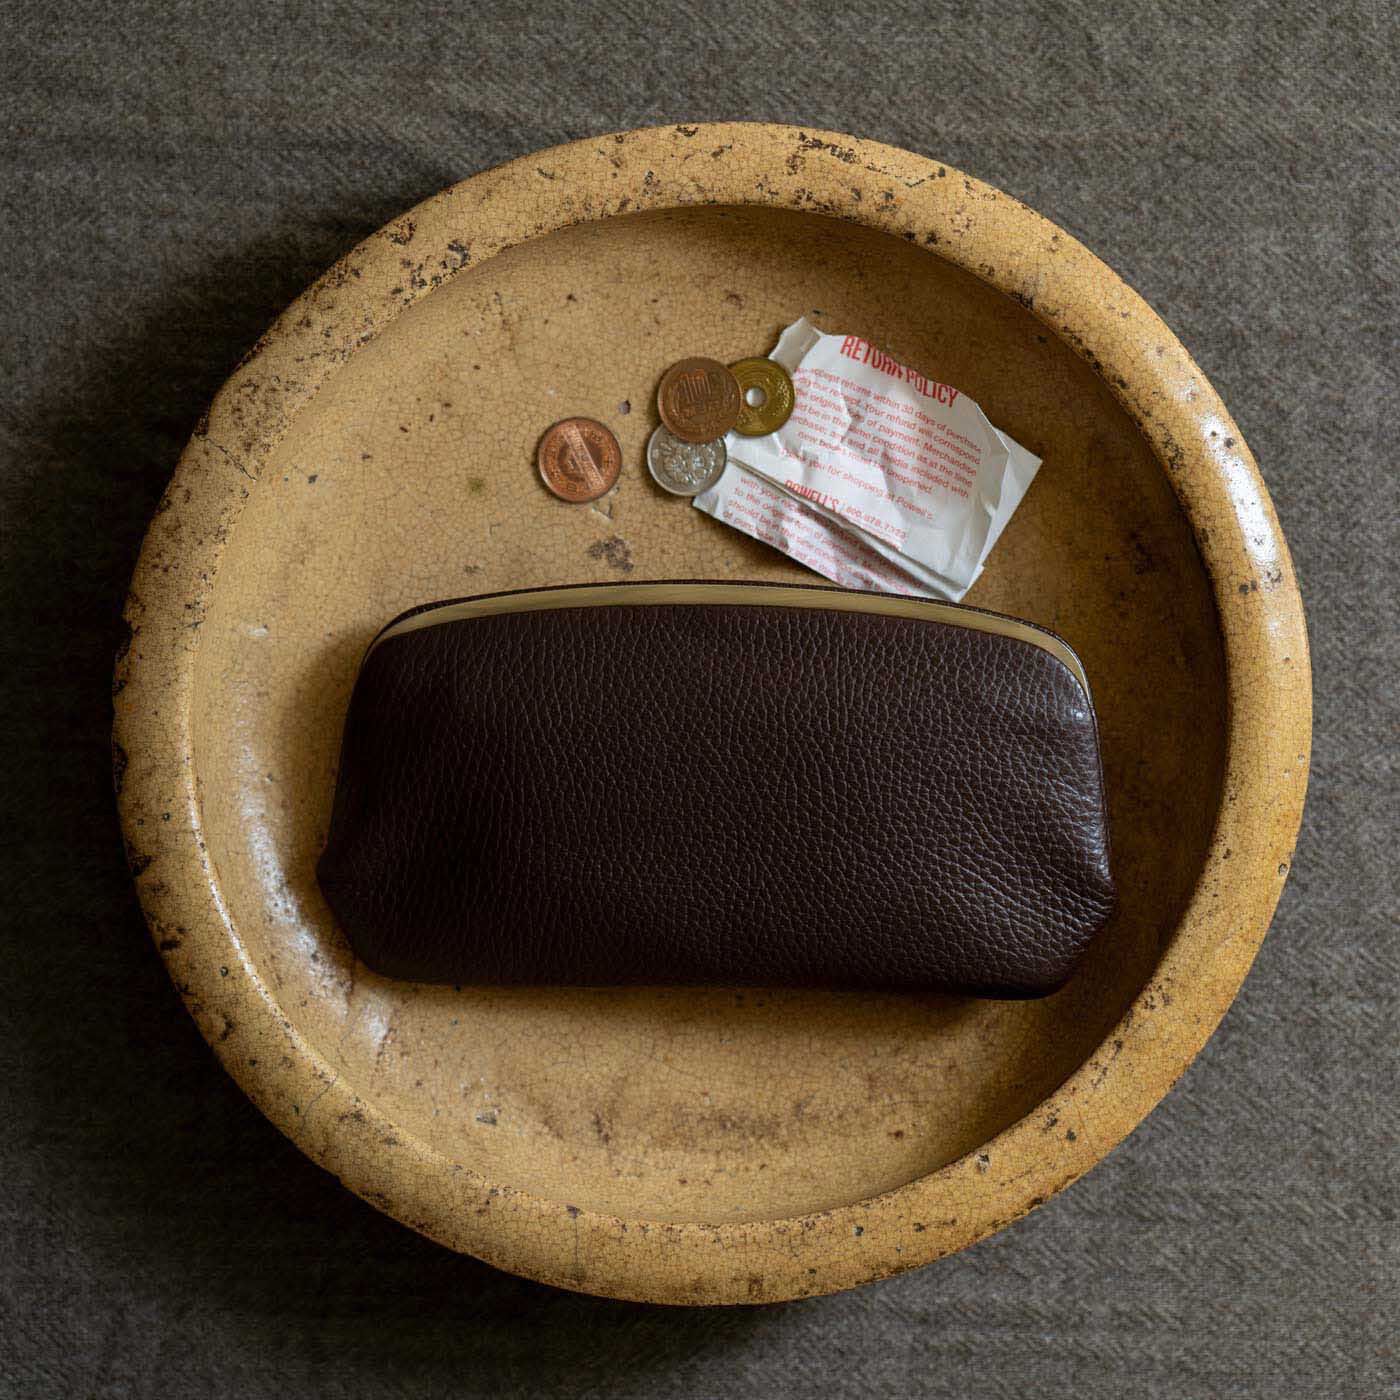 ＆Stories|奈良の財布職人が作った 職人本革のイタリアンレザーウォレット〈コーヒー色〉|金具を中に挟み込んだ、「天溝がま口」の長財布。クラッチバッグのような雰囲気があり、すっきりと洗練された印象です。